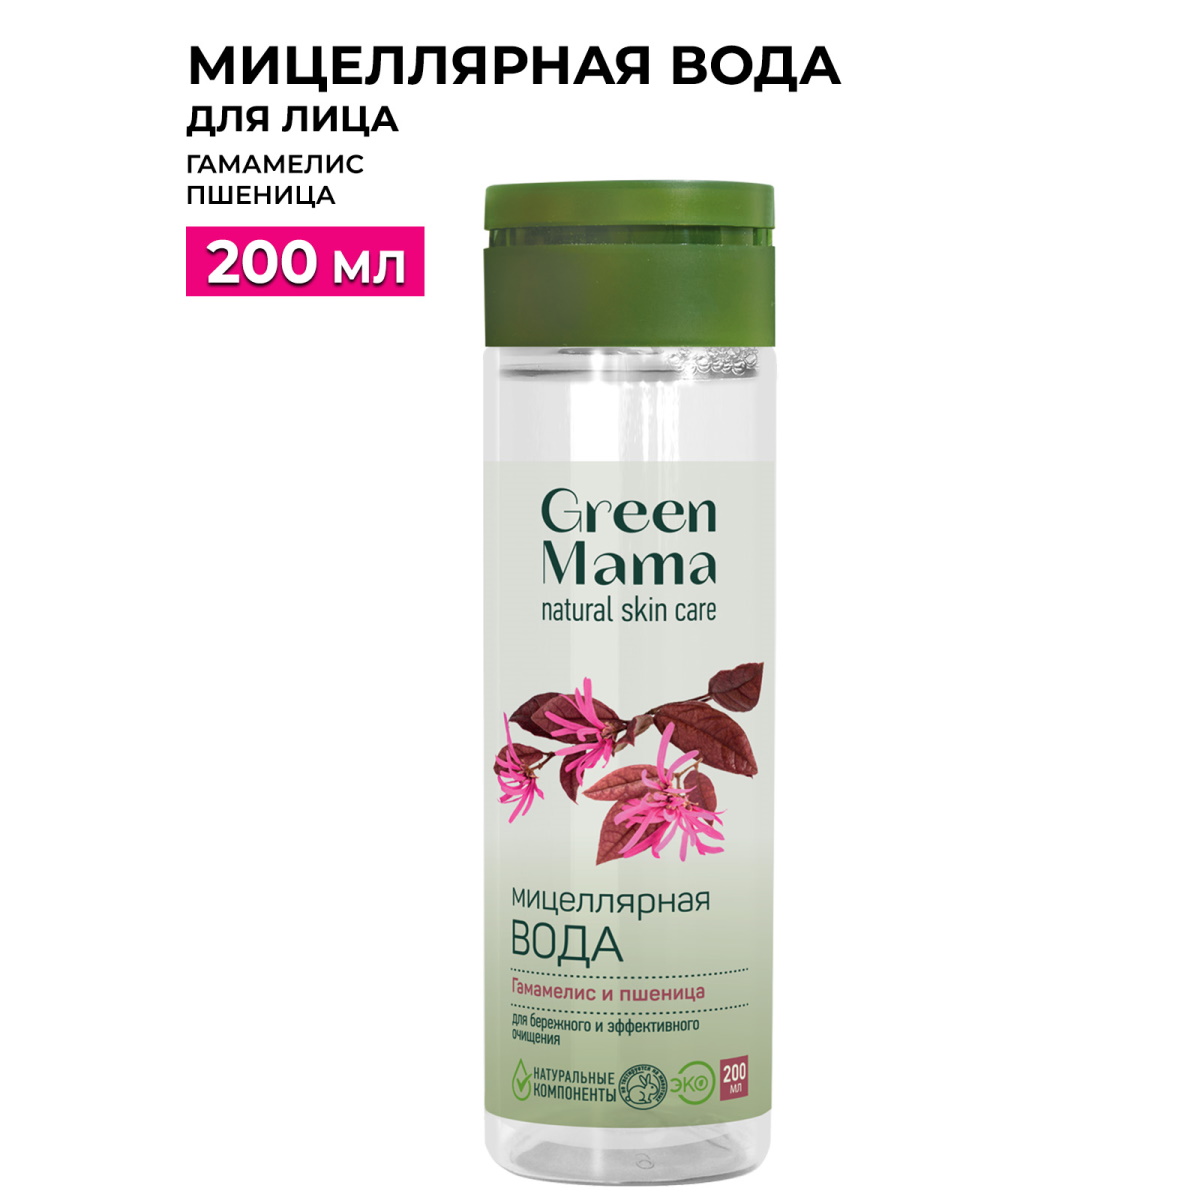 Вода мицеллярная Green Mama для бережного и эффективного очищения 200 мл